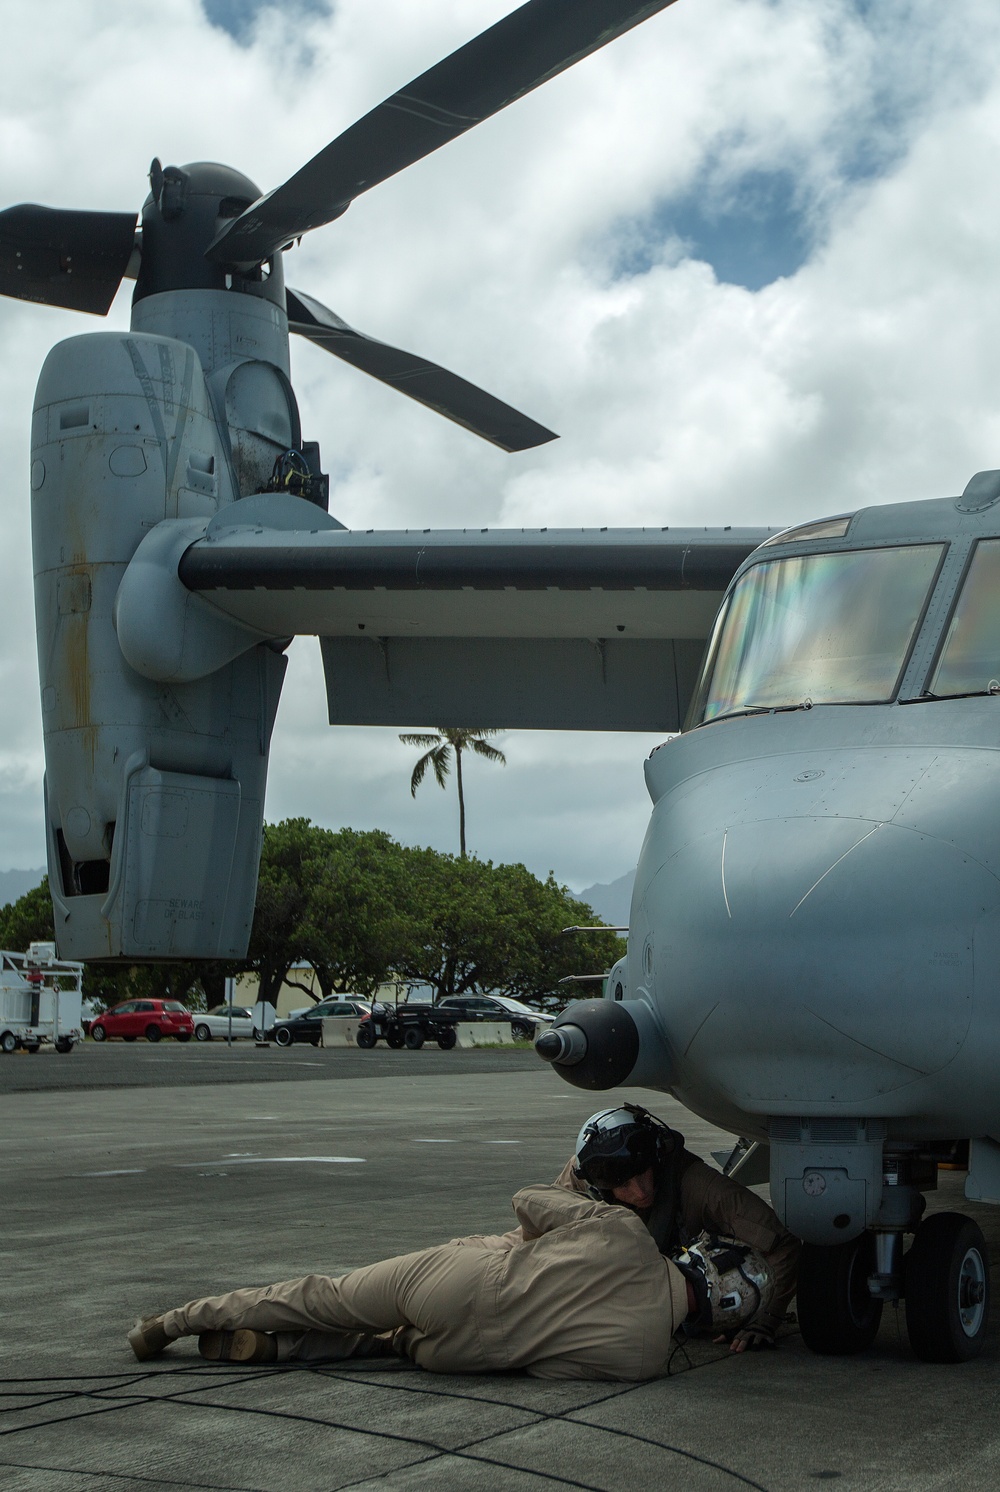 VMM-161 flies the Hawaiian skies